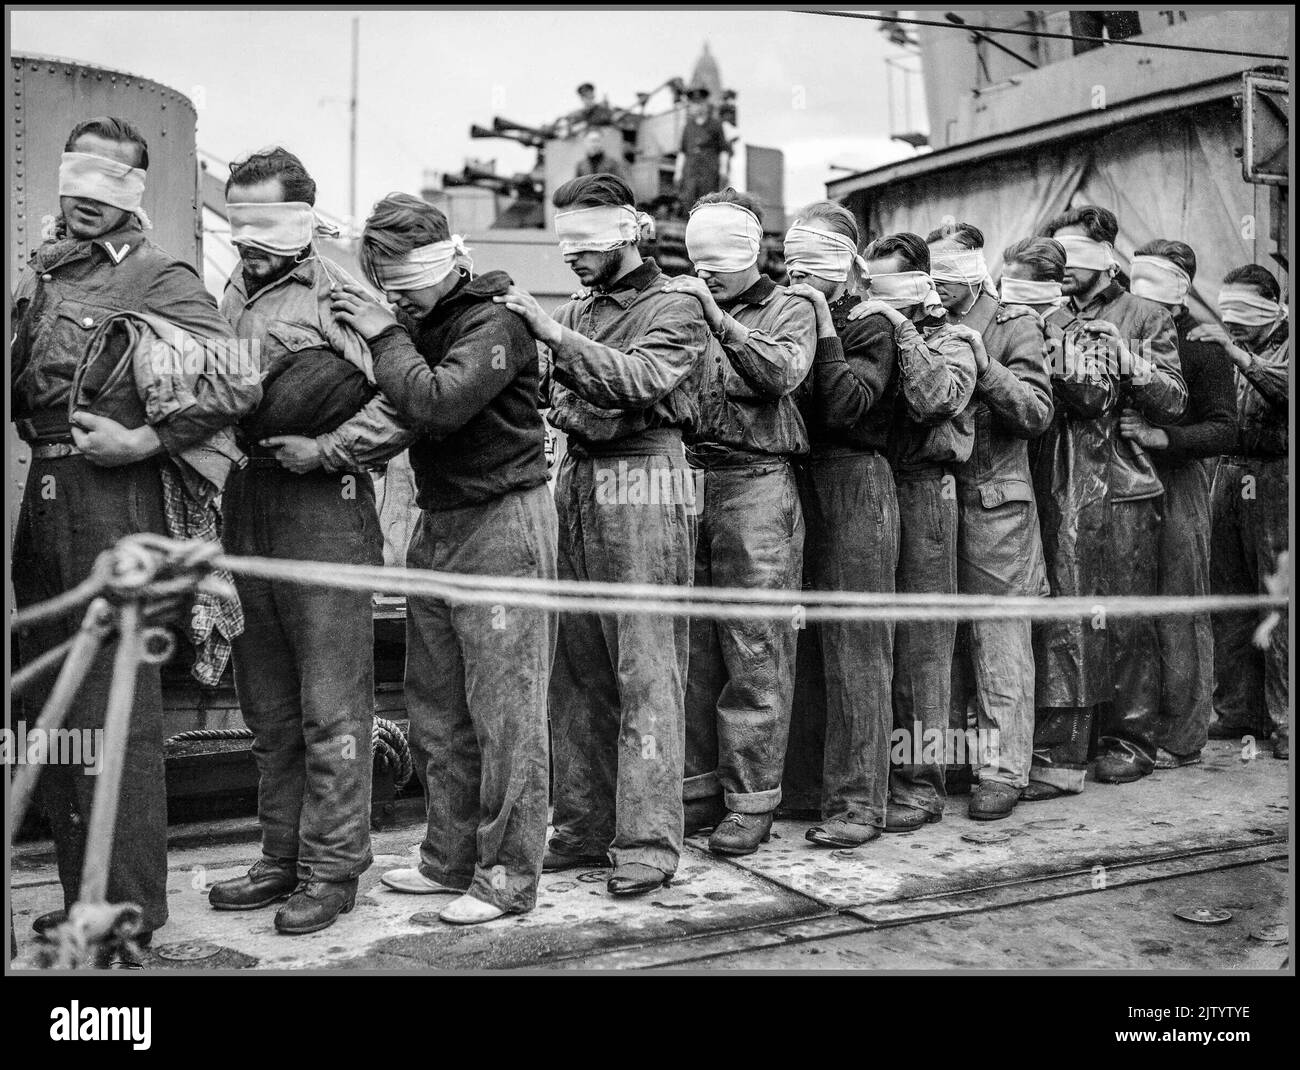 WW2 l'U-Boat nazi capturé et aveuglés marins prisonniers de prisonniers de prisonniers de prisonniers de guerre avec leurs capteurs la Marine royale pendant la Seconde Guerre mondiale a aveuglés les prisonniers de U-Boat débarquant du destroyer HMS ORIBI ou HMS ORWELL à Greenock sur leur chemin vers l'internement. Ils sont survivants de U-Boats coulé par avion de commandement côtier et ramassés par des destroyers. WW2 Seconde Guerre mondiale Banque D'Images